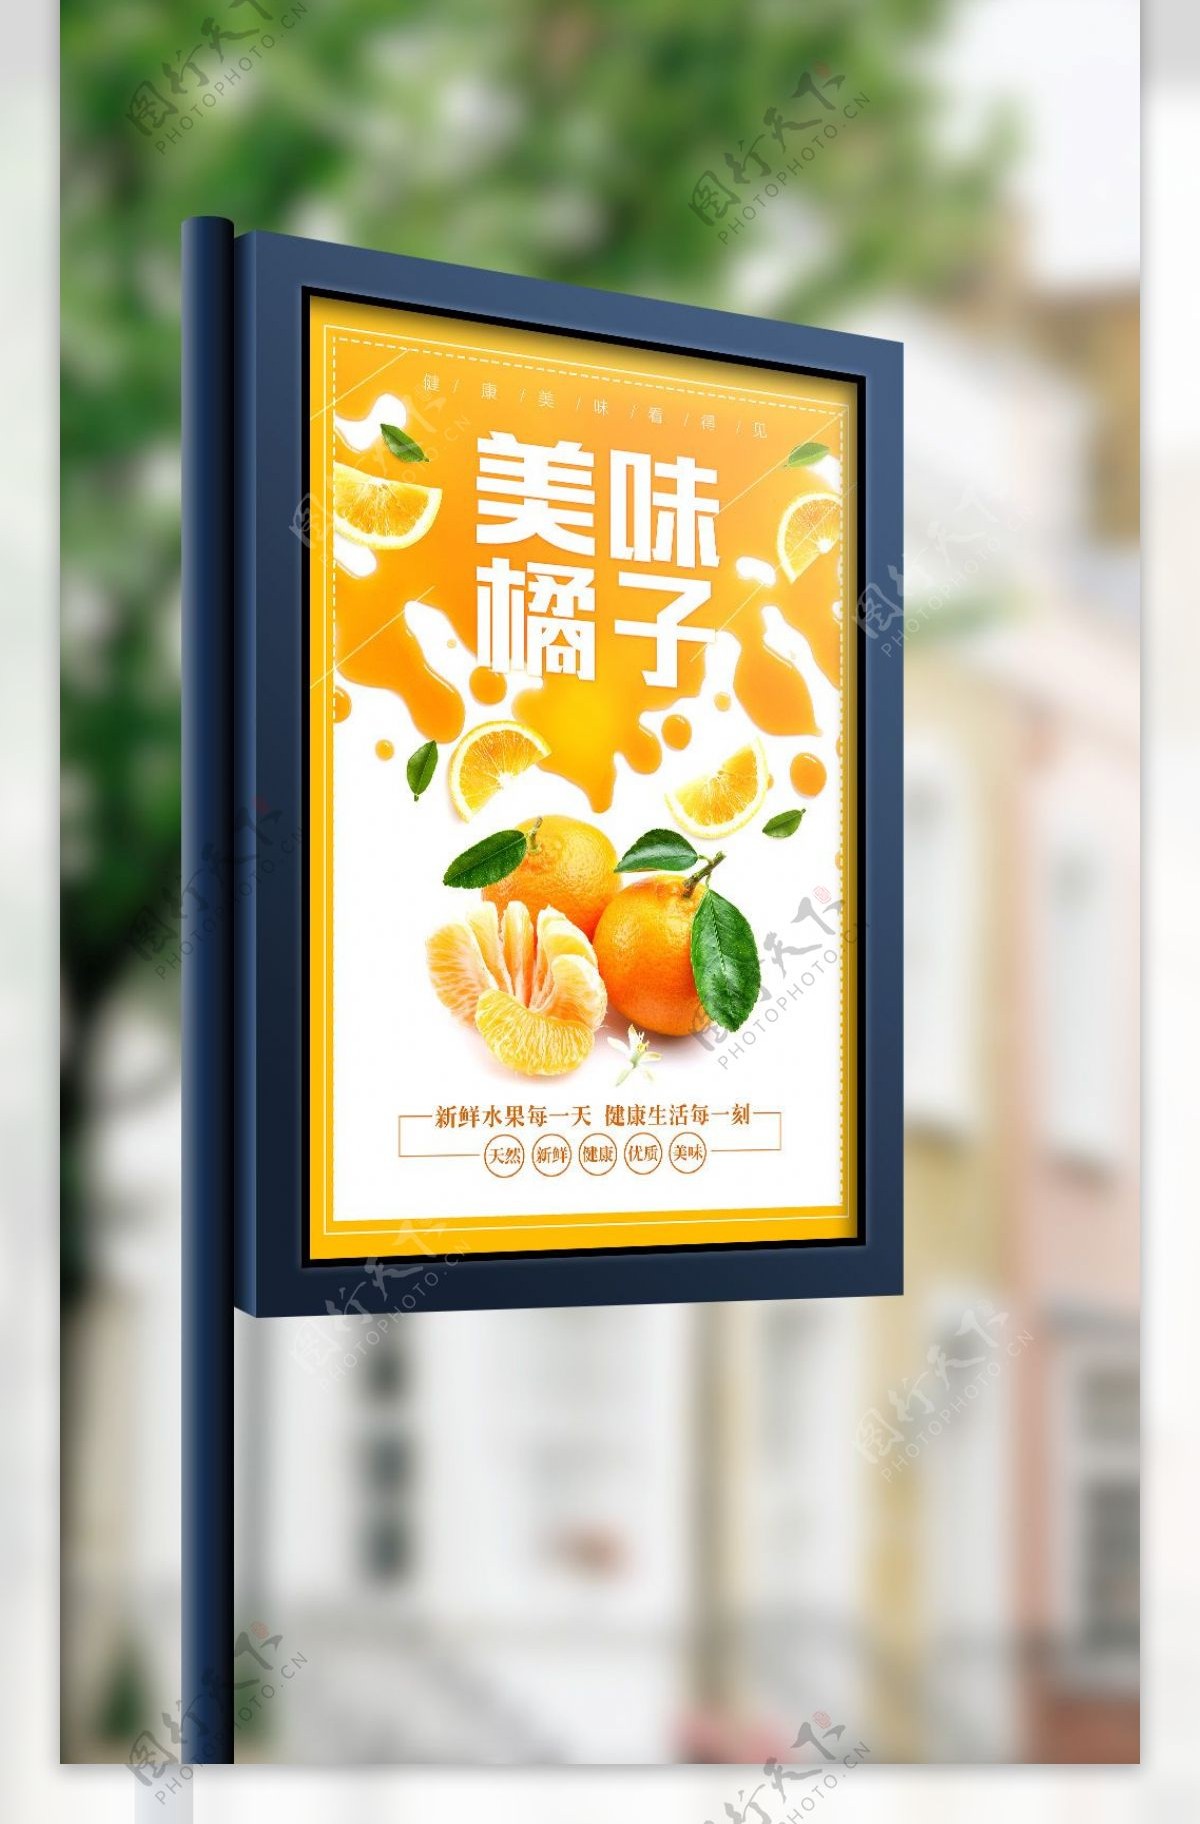 2017年橙色美味橘子海报设计